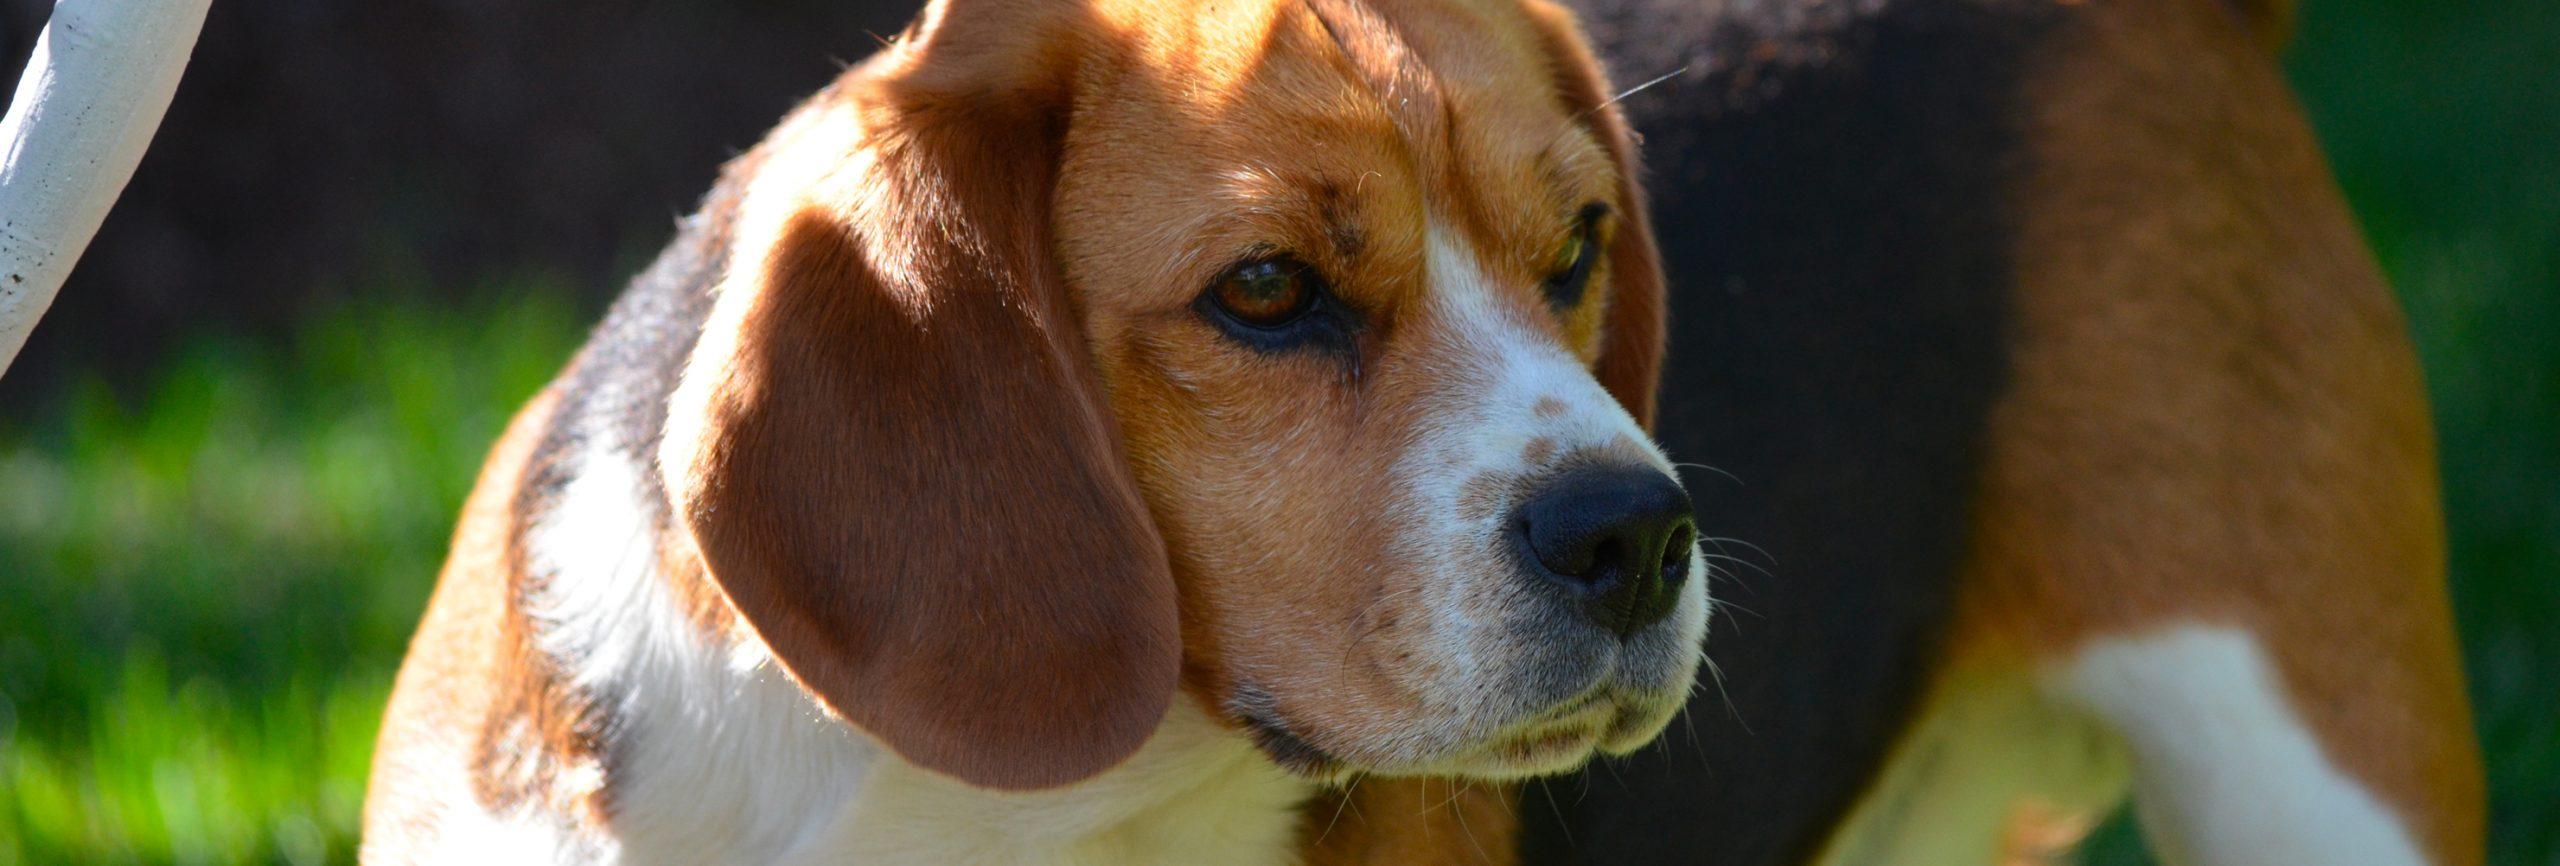 chien de race Beagle chien de chasse